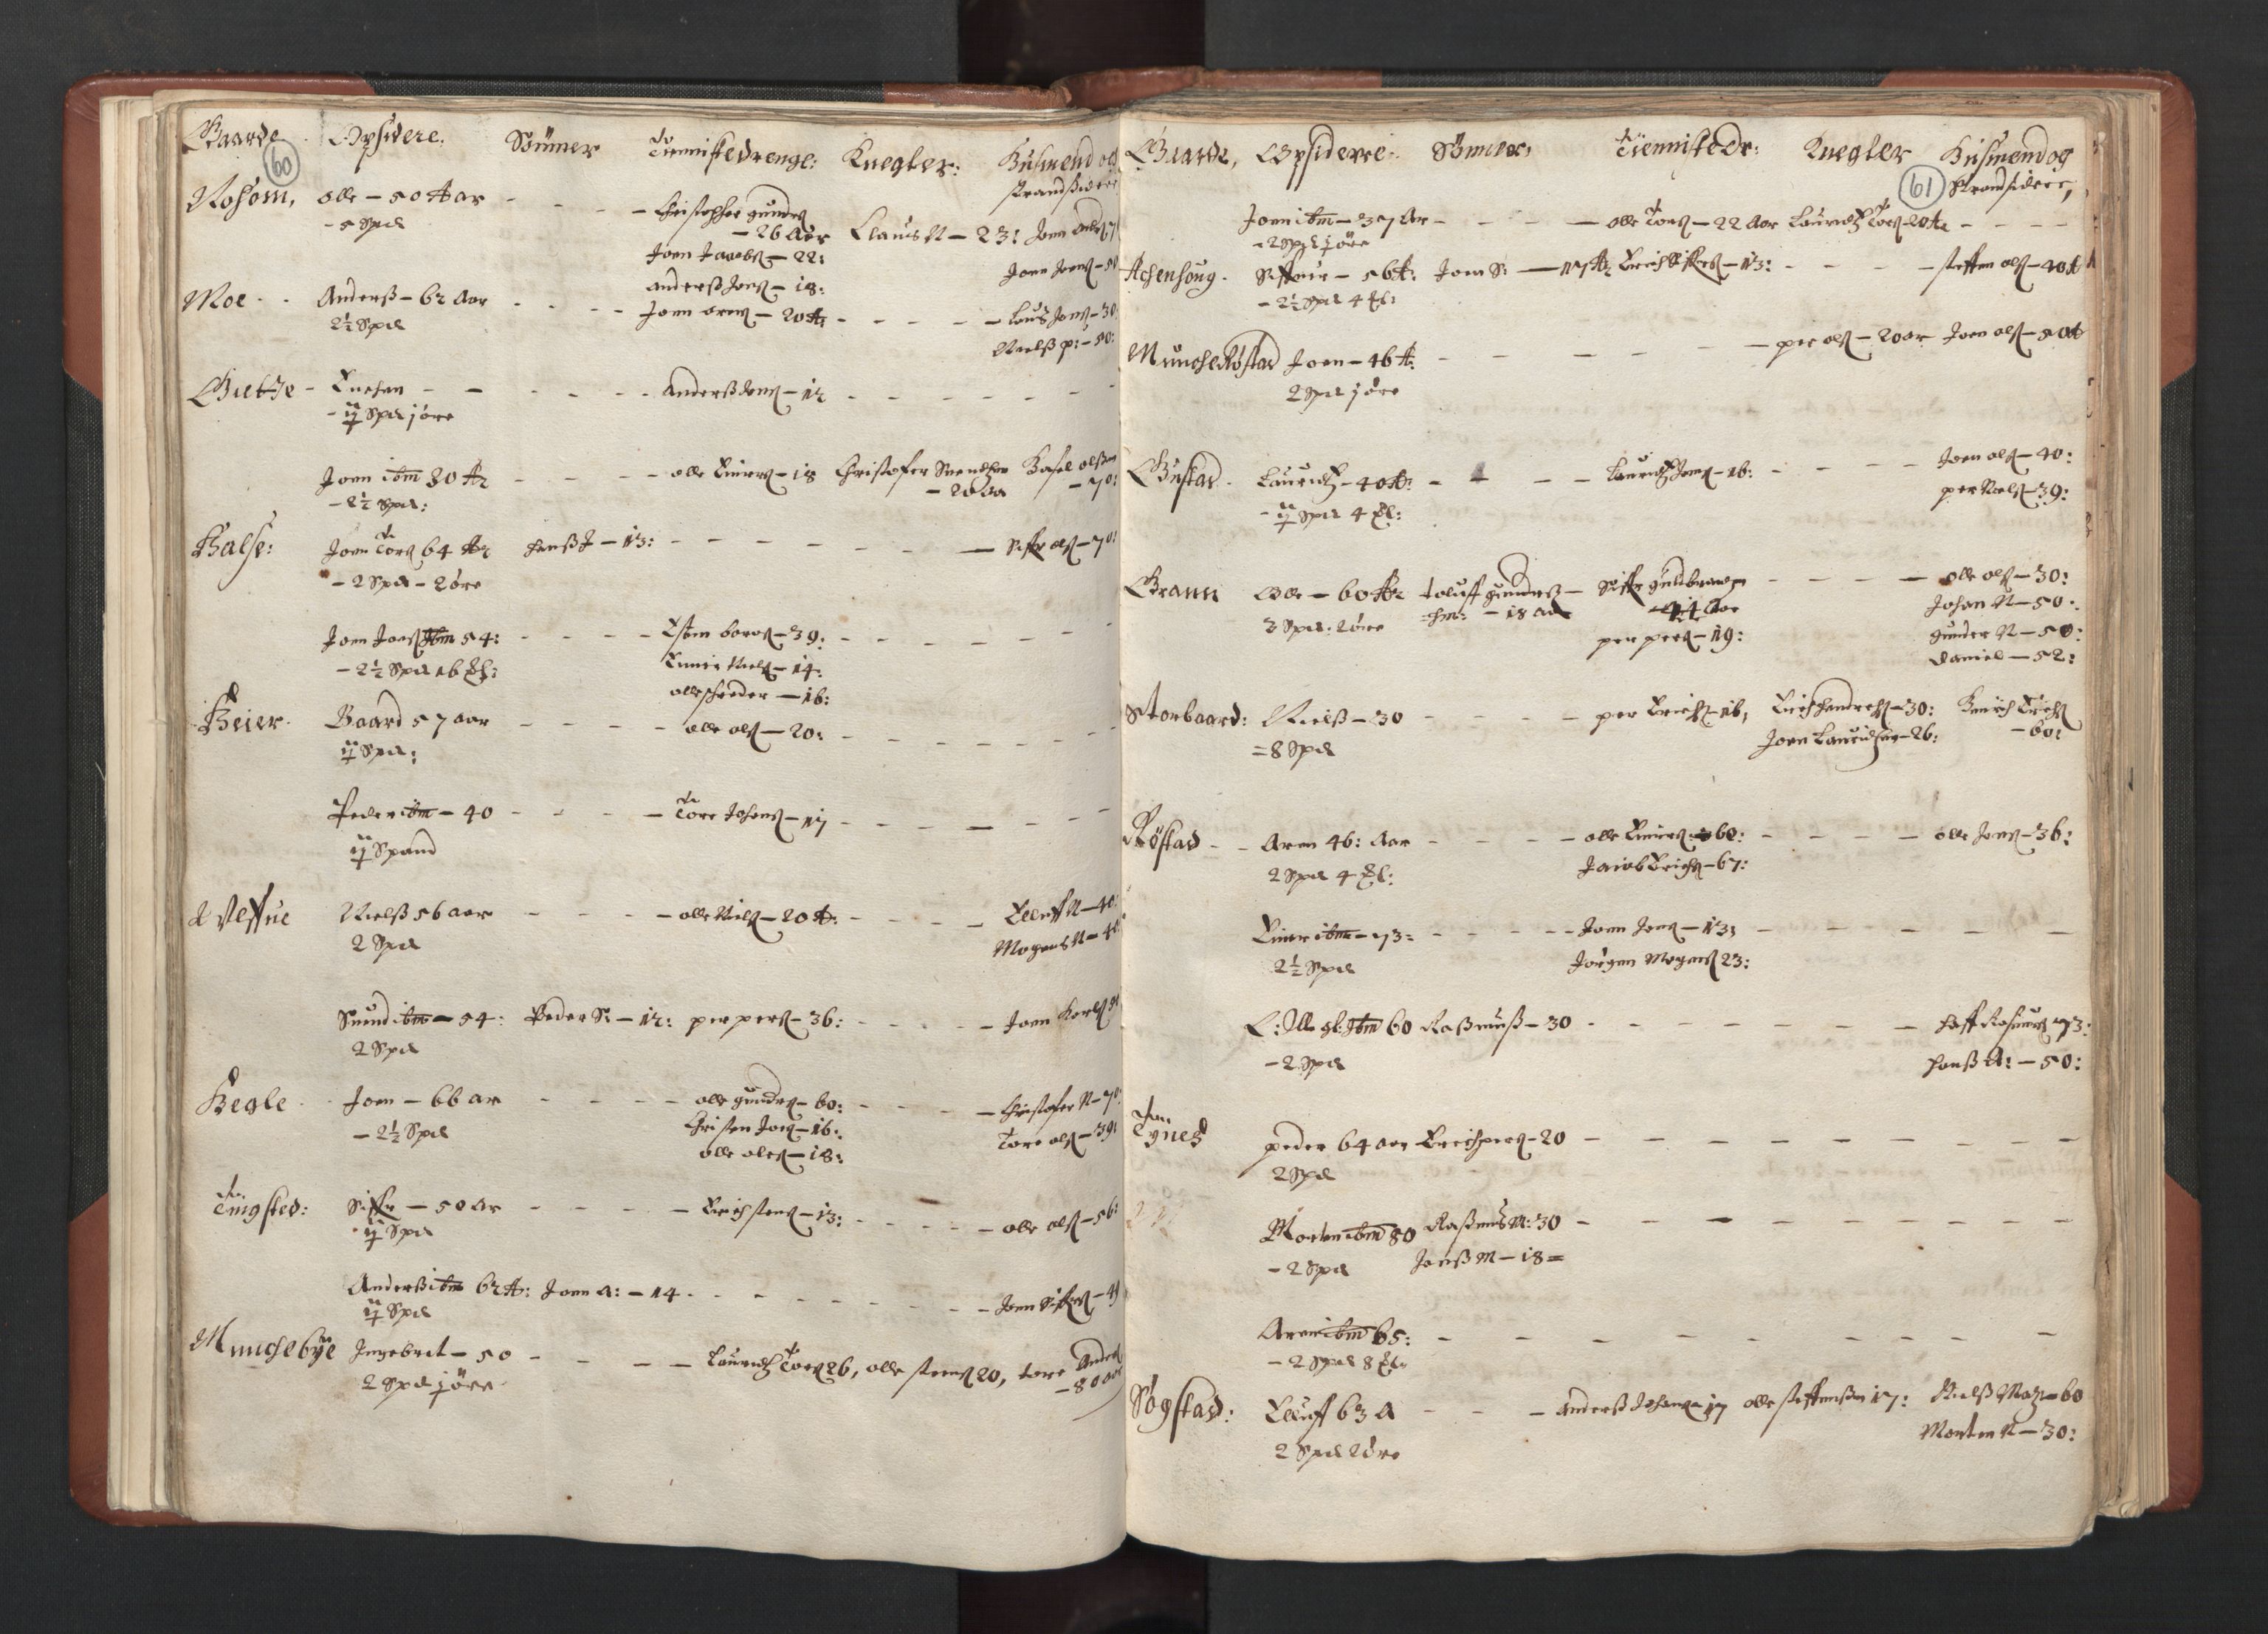 RA, Fogdenes og sorenskrivernes manntall 1664-1666, nr. 19: Fosen fogderi, Inderøy fogderi, Selbu fogderi, Namdal fogderi og Stjørdal fogderi, 1664-1665, s. 60-61